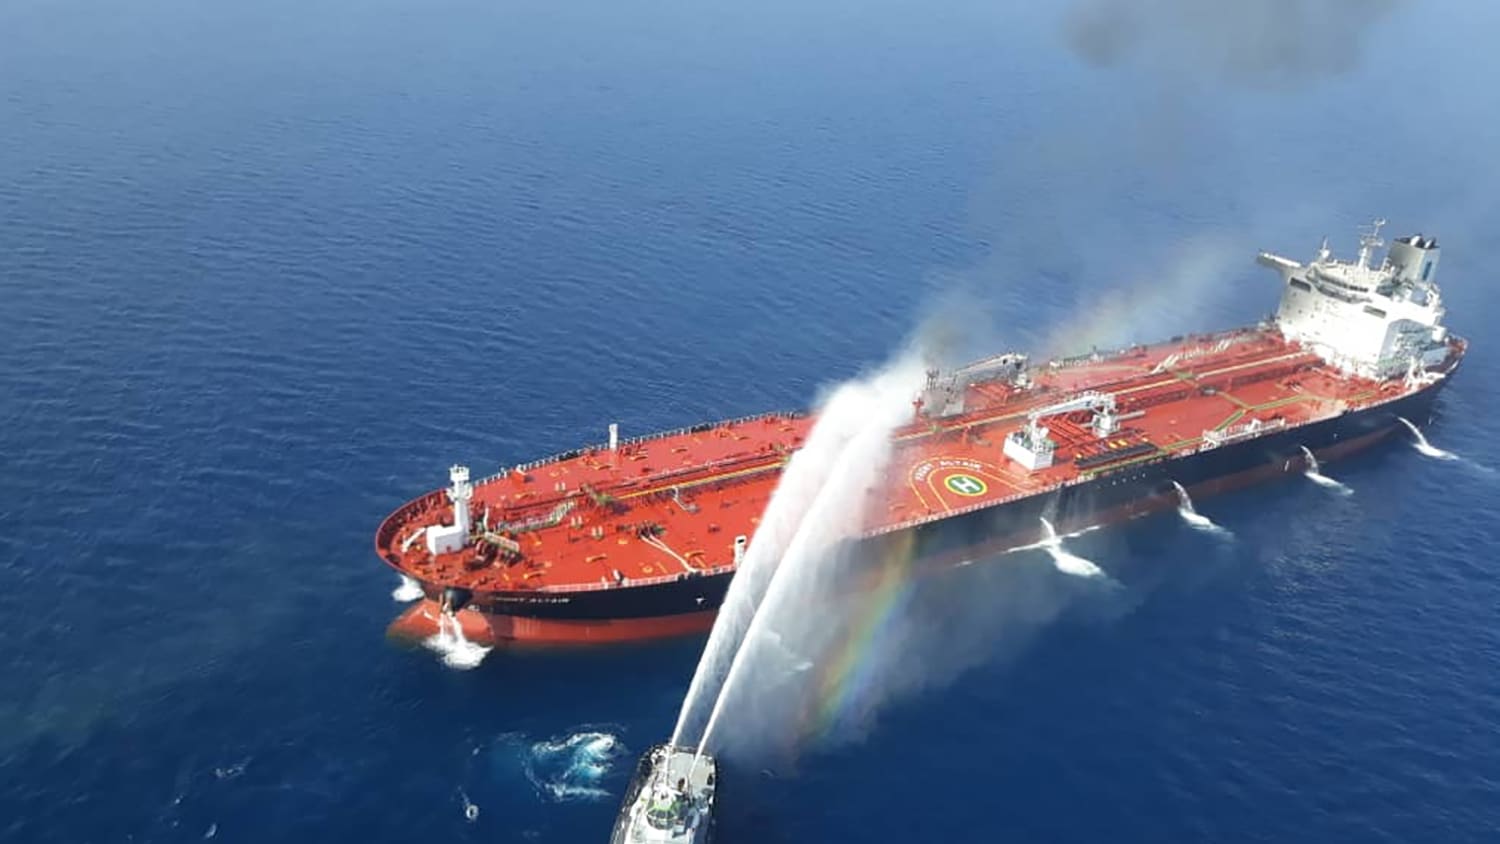 إيران تبث فيديو لنيران مشتعلة بإحدى السفينتين في خليج عمان